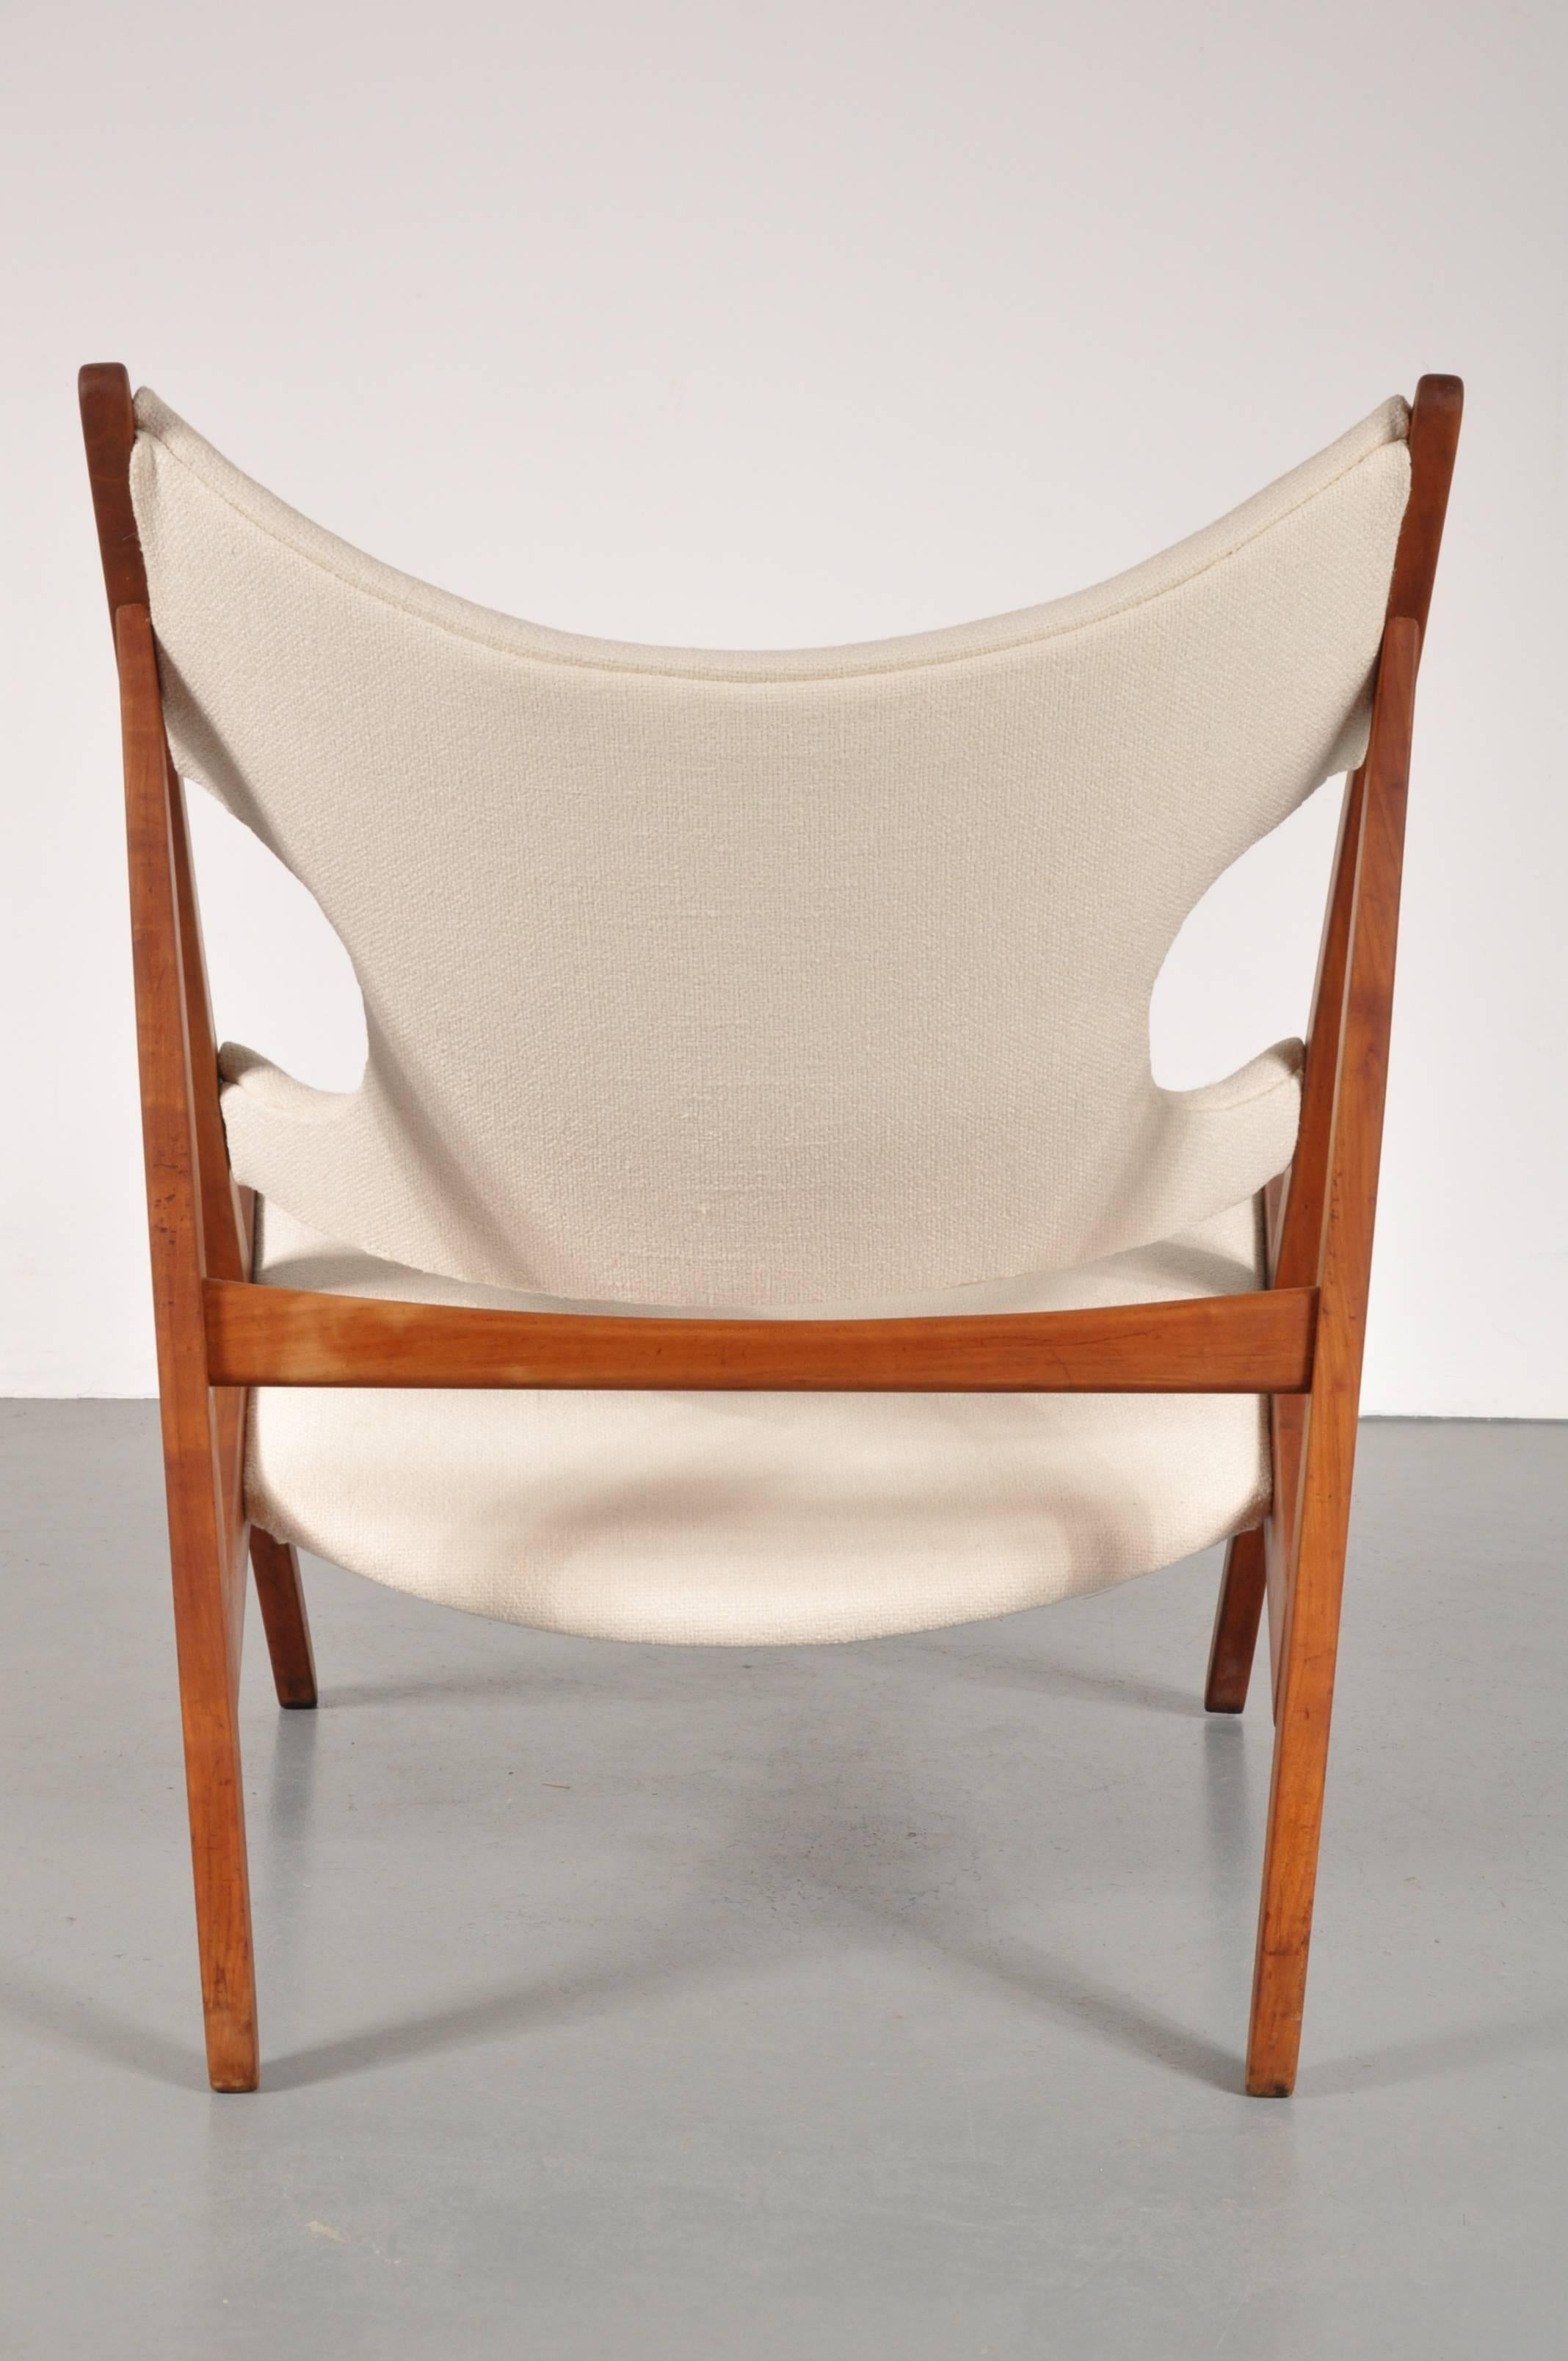 Mid-Century Modern Knitting Chair by Ib Kofod Larsen for Christensen & Larsen, Denmark 1950